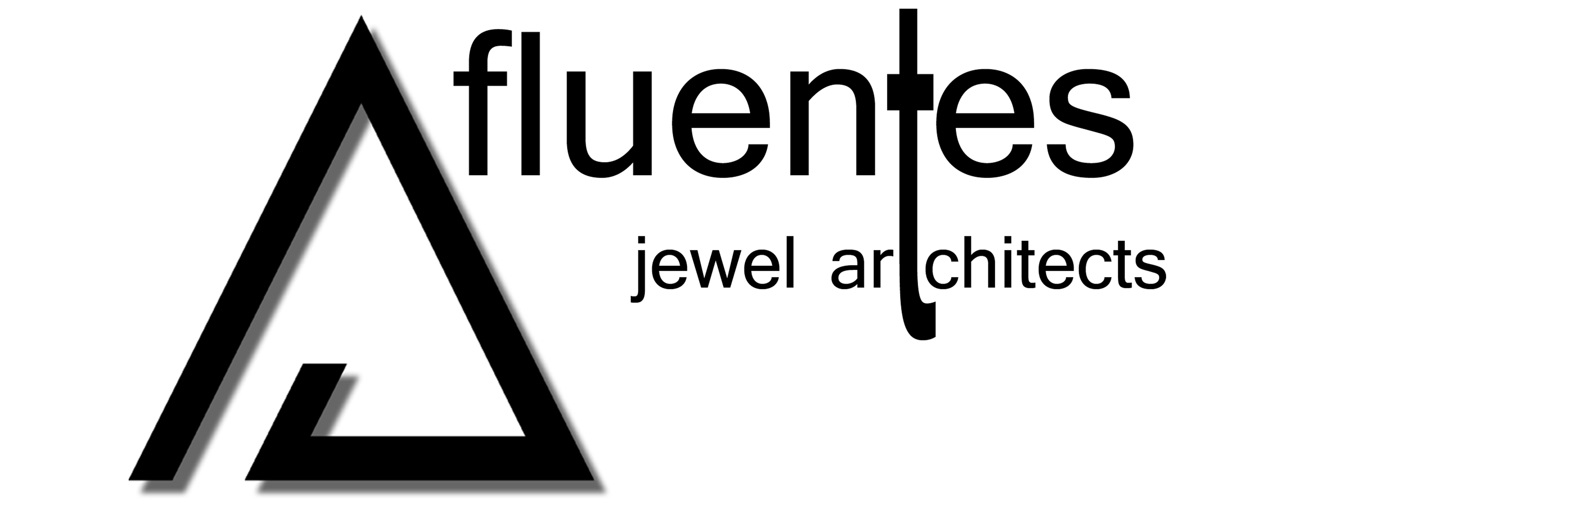 Logo header FLUENTES